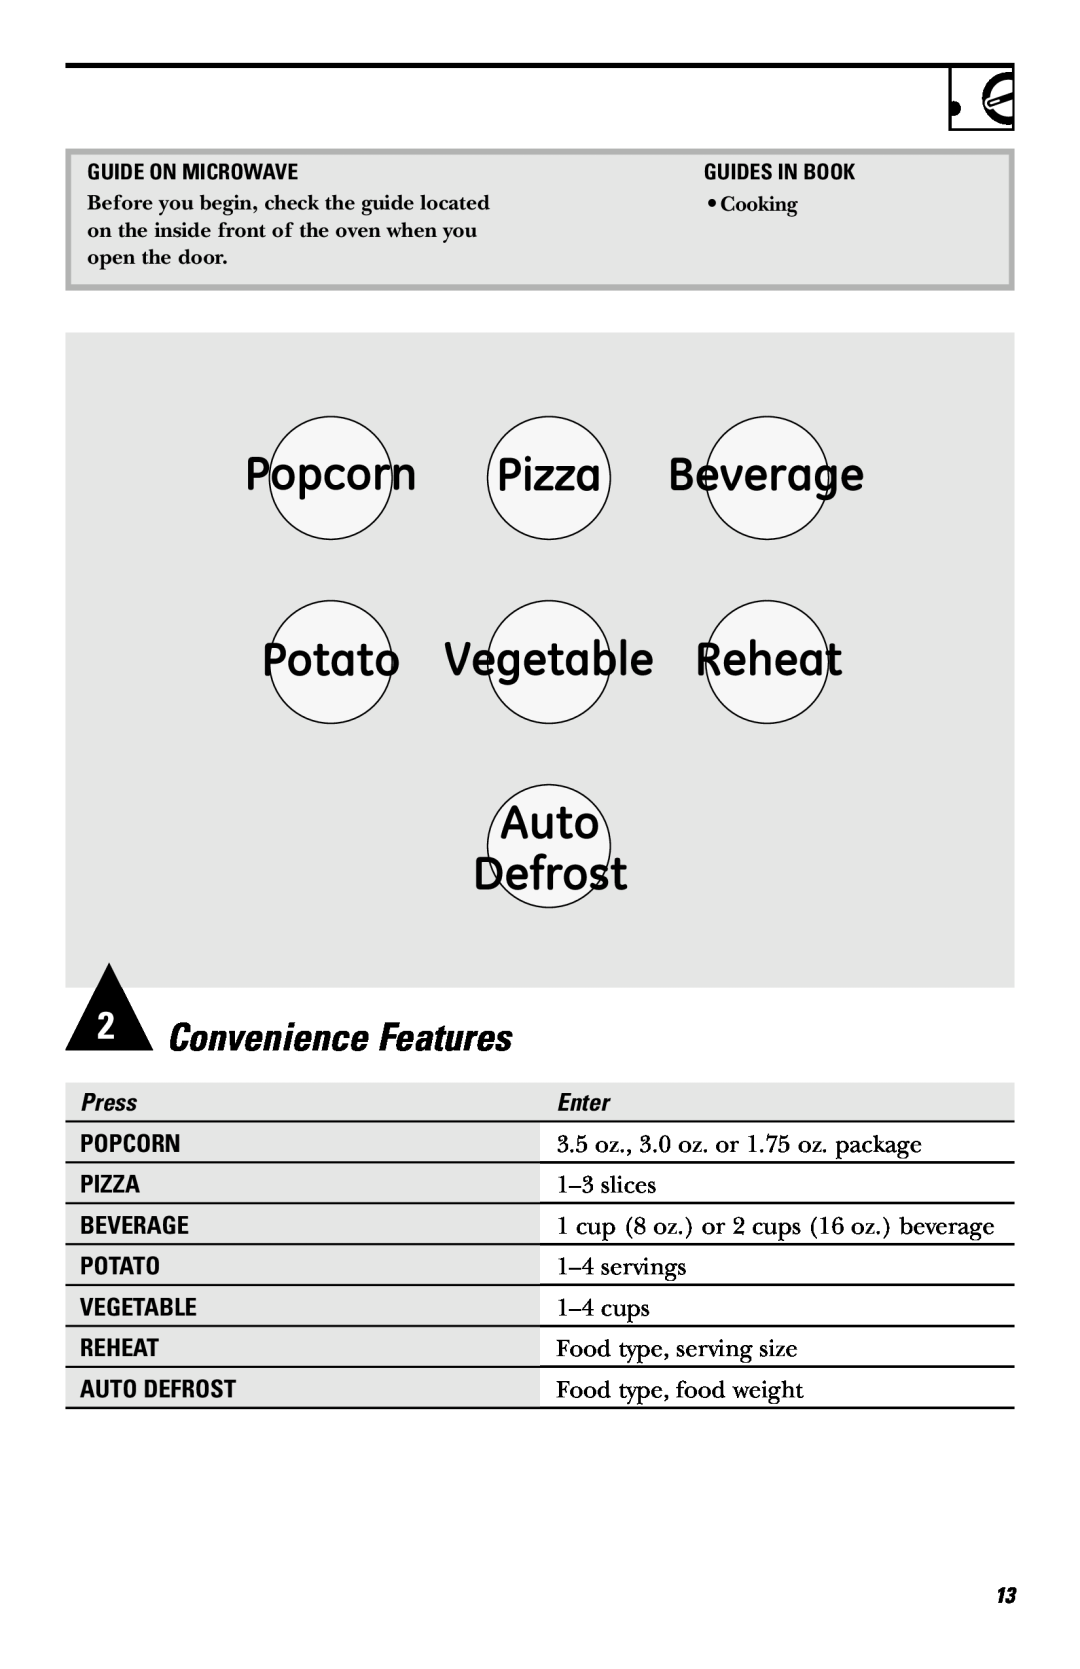 Frigidaire JE740 2Convenience Features, Press, Enter, Popcorn, Pizza, Beverage, Potato, Vegetable, Reheat, Auto Defrost 